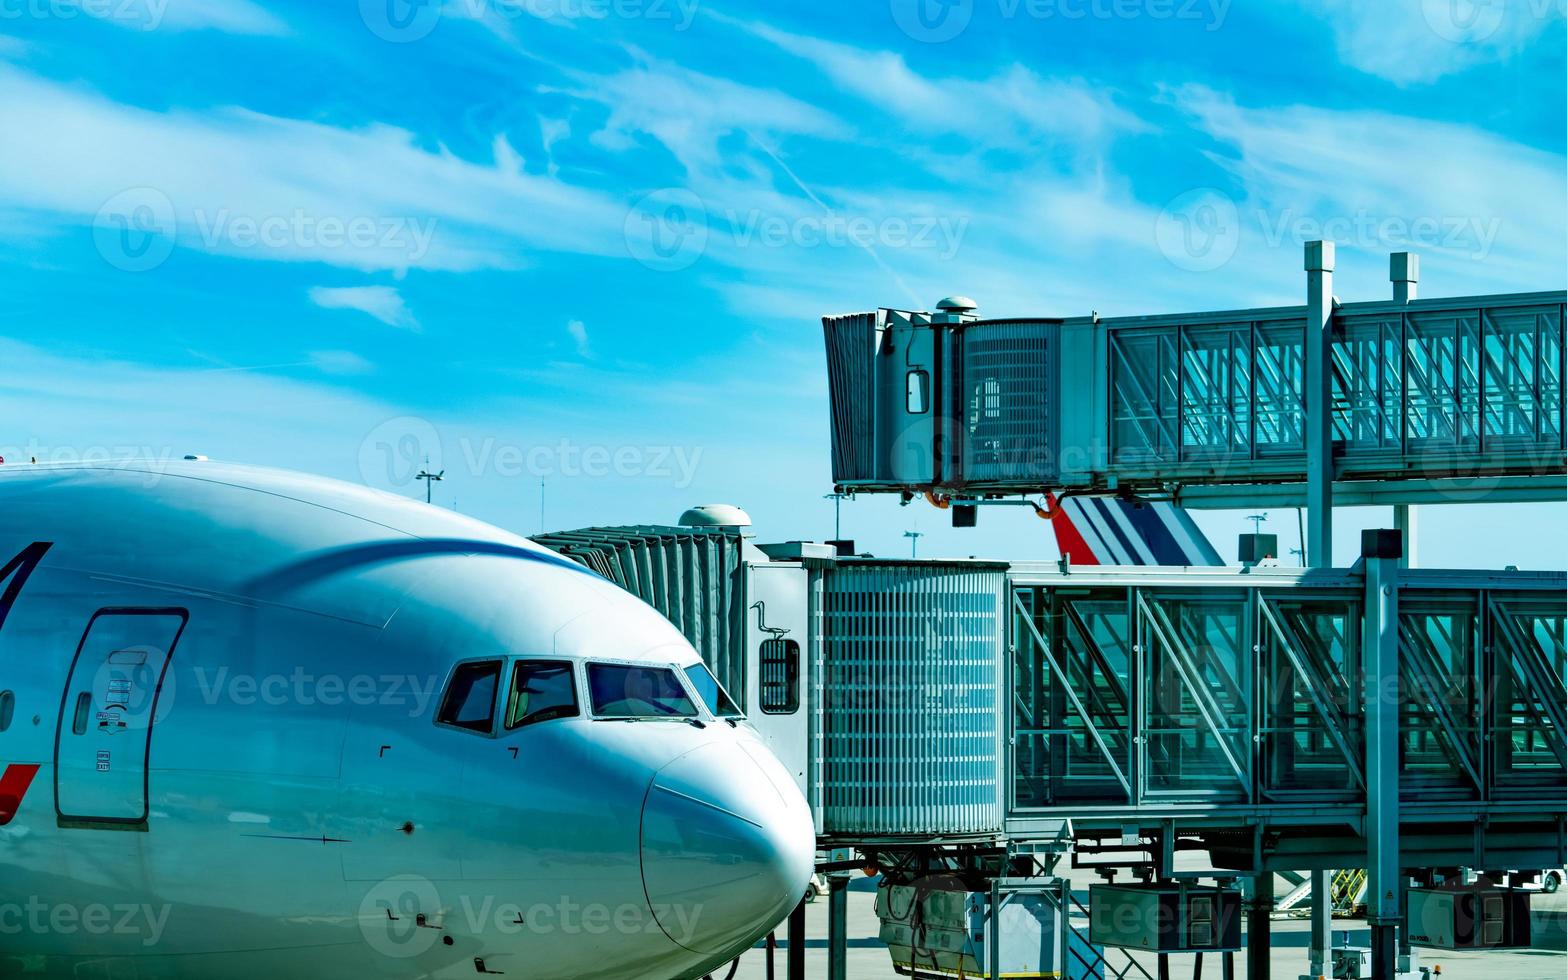 commerciële luchtvaartmaatschappij geparkeerd bij jet bridge voor het opstijgen van passagiers op de luchthaven. vliegtuigen passagiers instapbrug aangemeerd met blauwe lucht en witte wolken. vertrekvlucht van internationale luchtvaartmaatschappij. foto